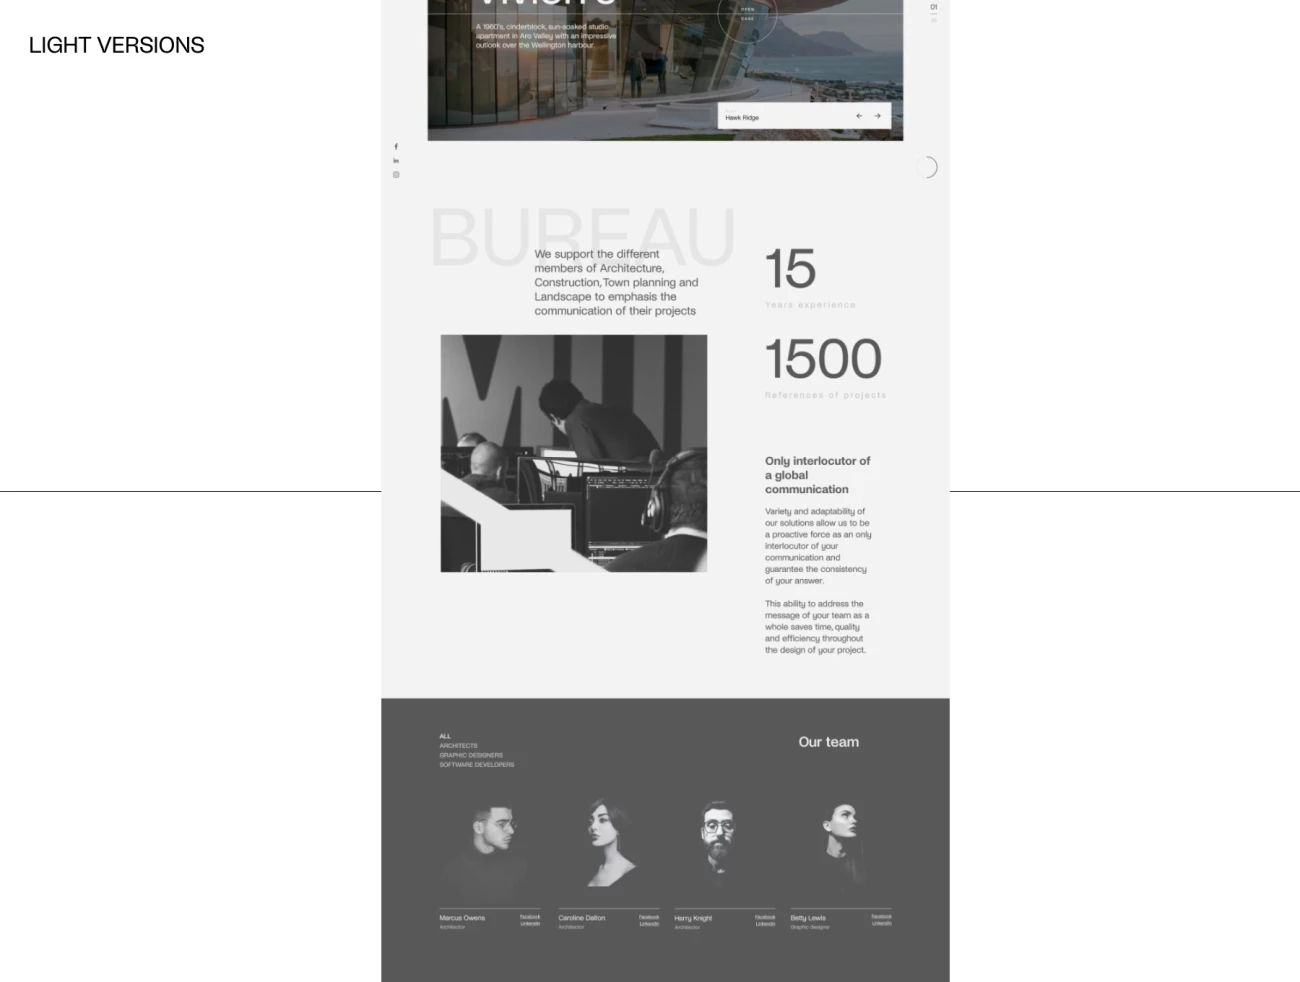 奢华典雅时尚建筑设计机构工作室网站设计模板 LINE architectural bureau – Figma Template插图11